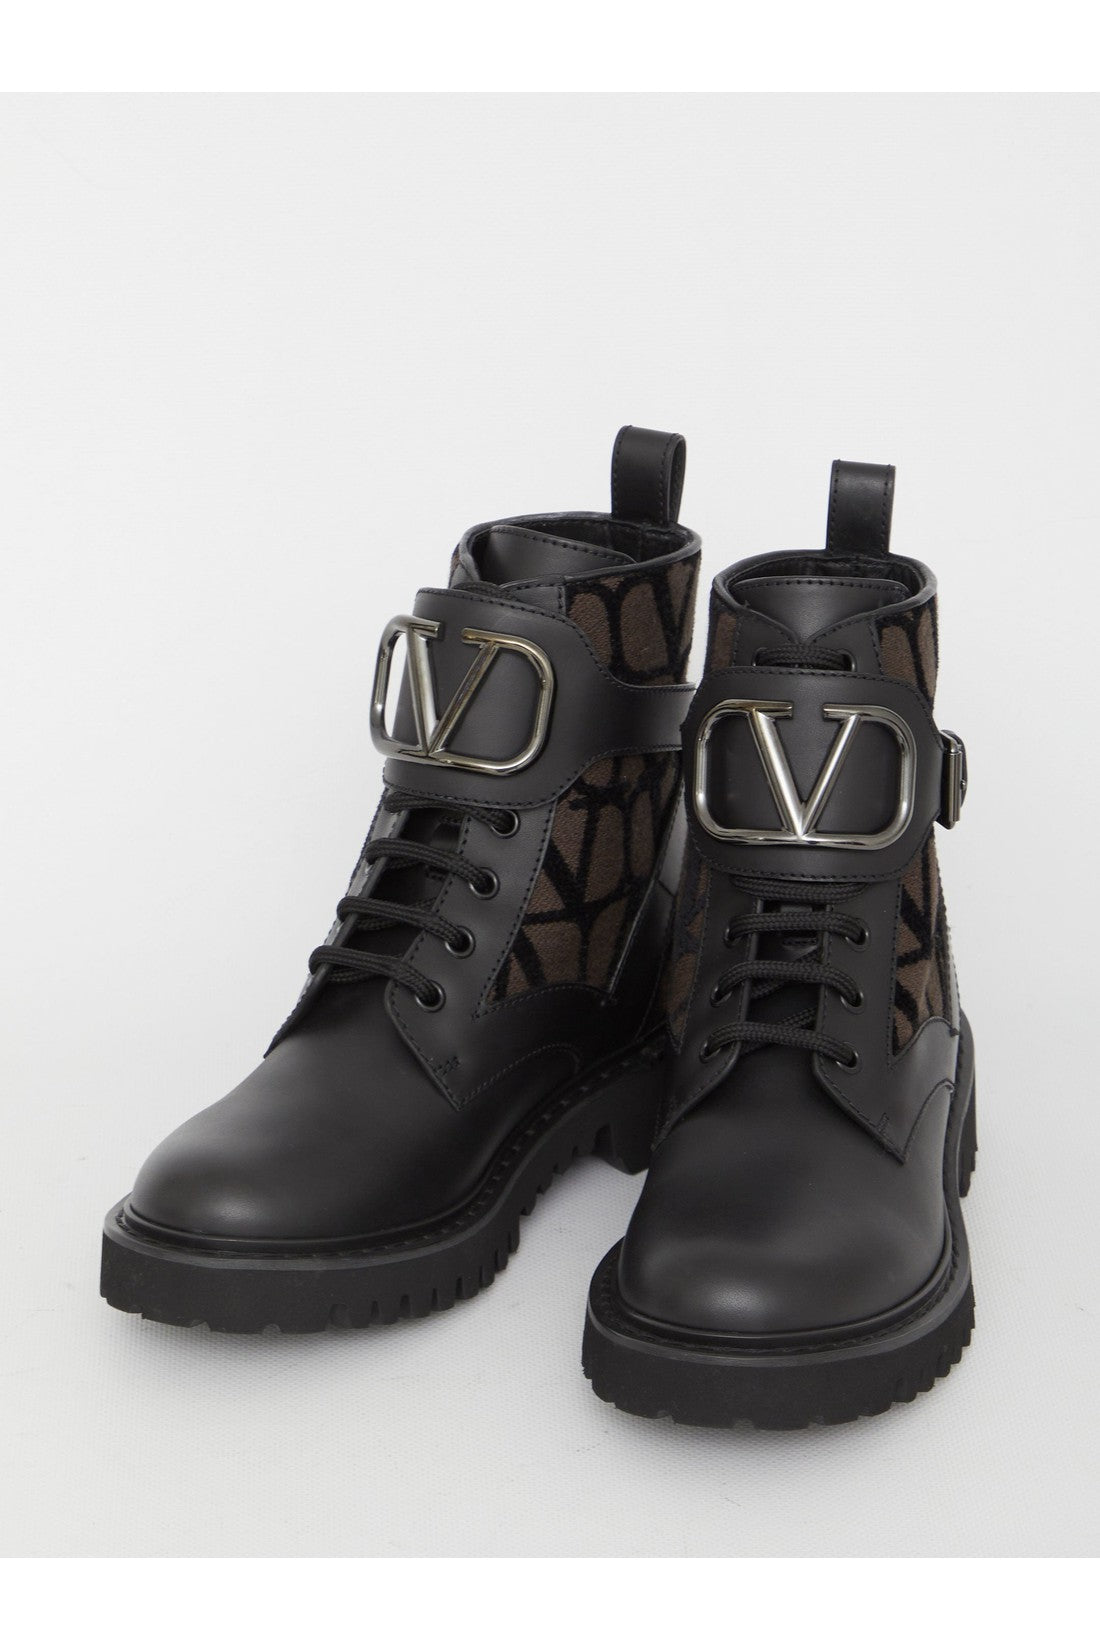 VLogo Signature Combat boots